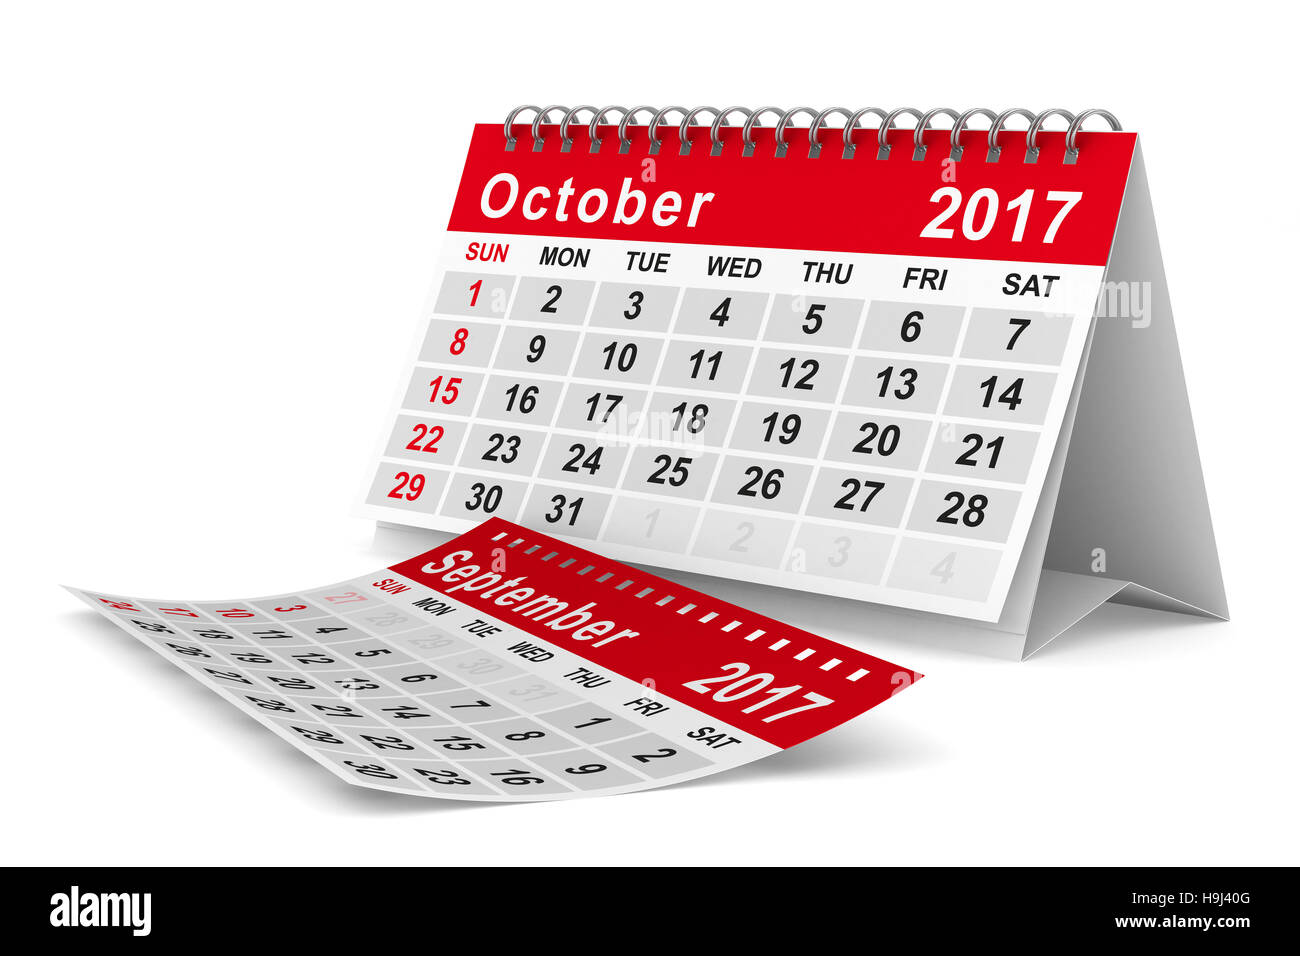 Calendrier de l'année 2017. Octobre. Image 3D isolés Banque D'Images